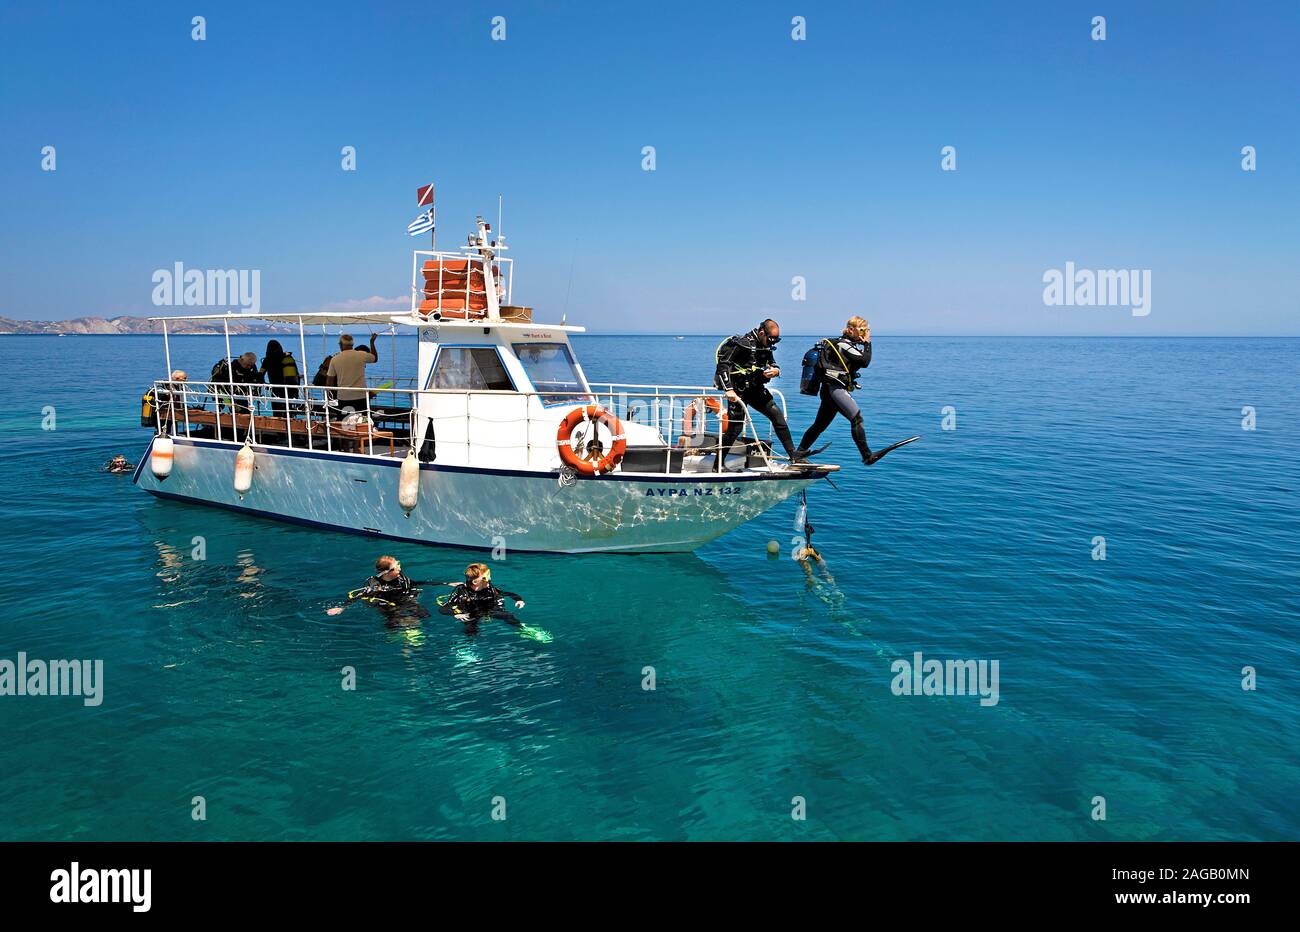 Scuba Diver saltando dalla barca in mare, l'isola di Zante, Grecia Foto Stock